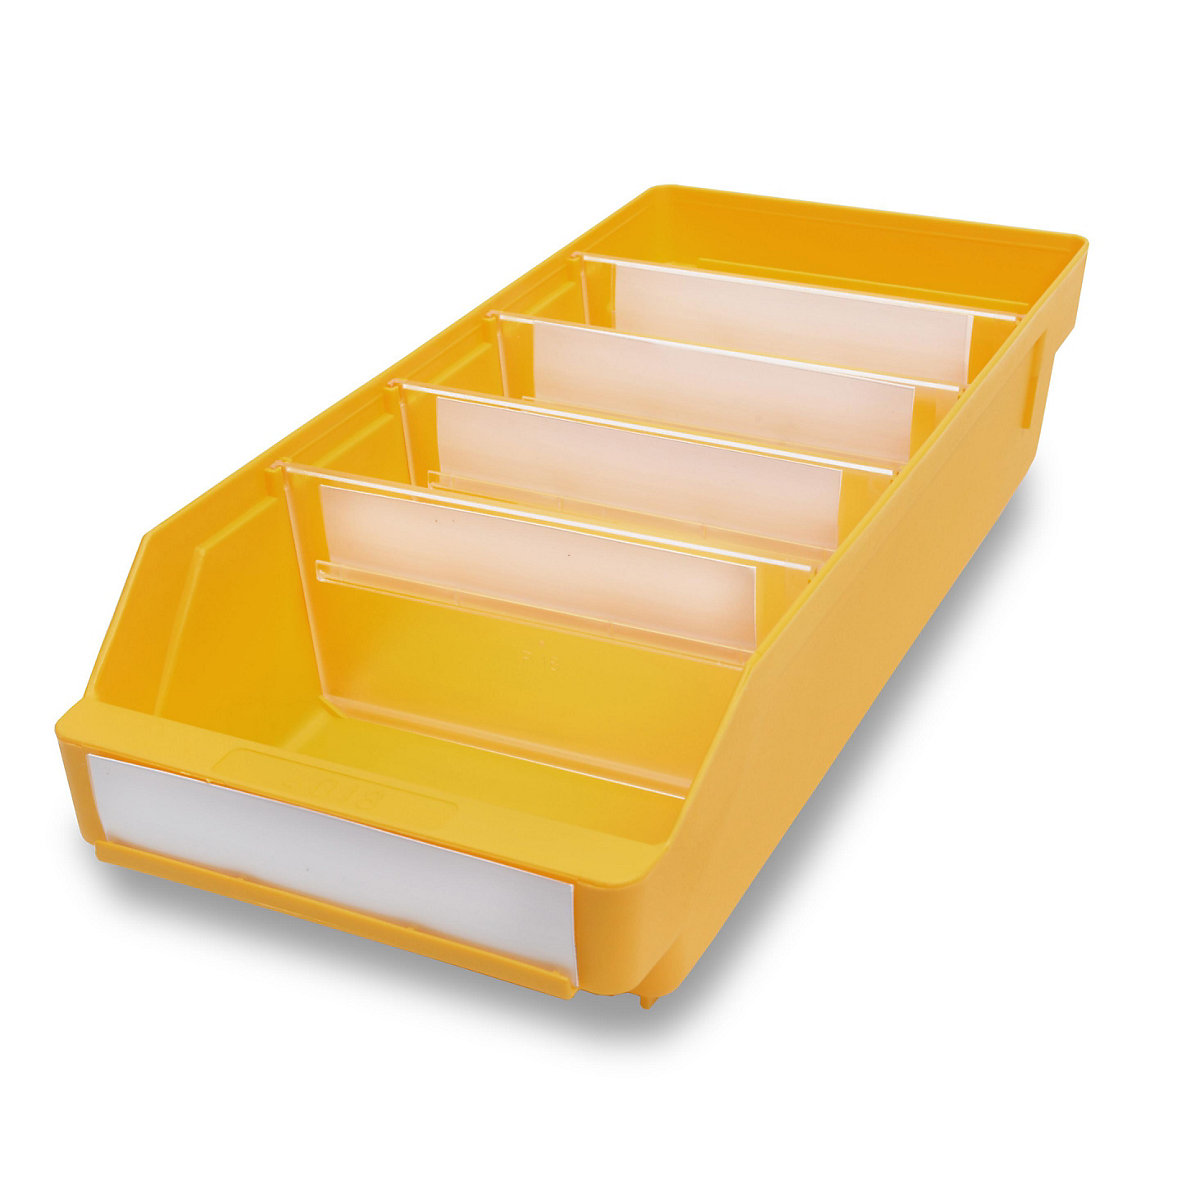 STEMO Regalkasten aus hochschlagfestem Polypropylen, gelb, LxBxH 400 x 180 x 95 mm, VE 20 Stk